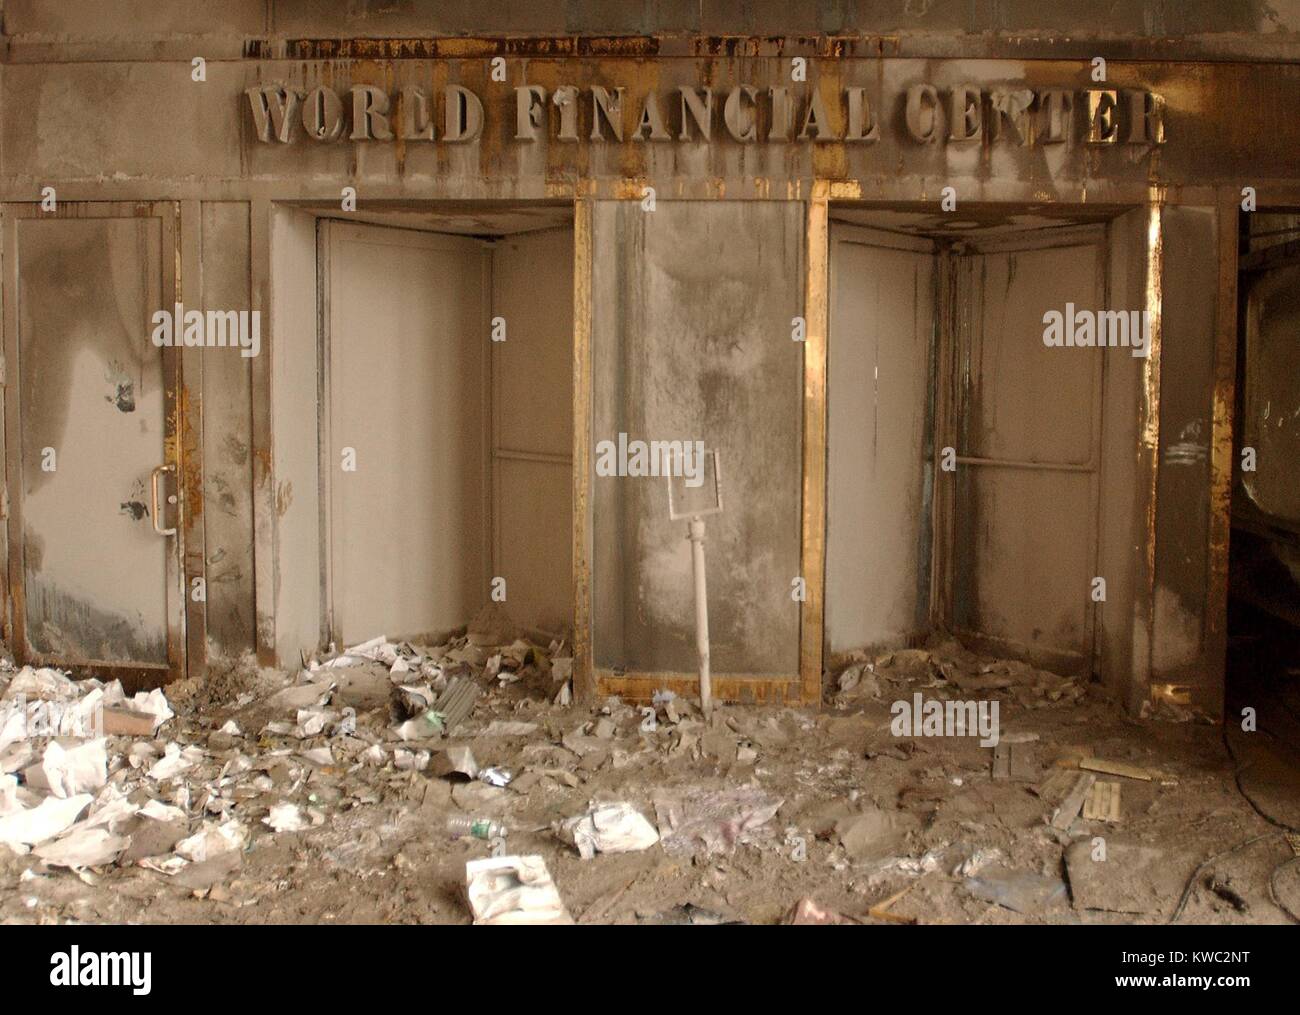 World Financial Center Eingang nach dem Zusammenbruch der Zwillingstürme in Asche und Ruß bedeckt. 14. September 2001. New York City, nach dem 11. September 2001 Terroranschläge. US Navy Foto von Jim Watson (BSLOC 2015 2 78) Stockfoto